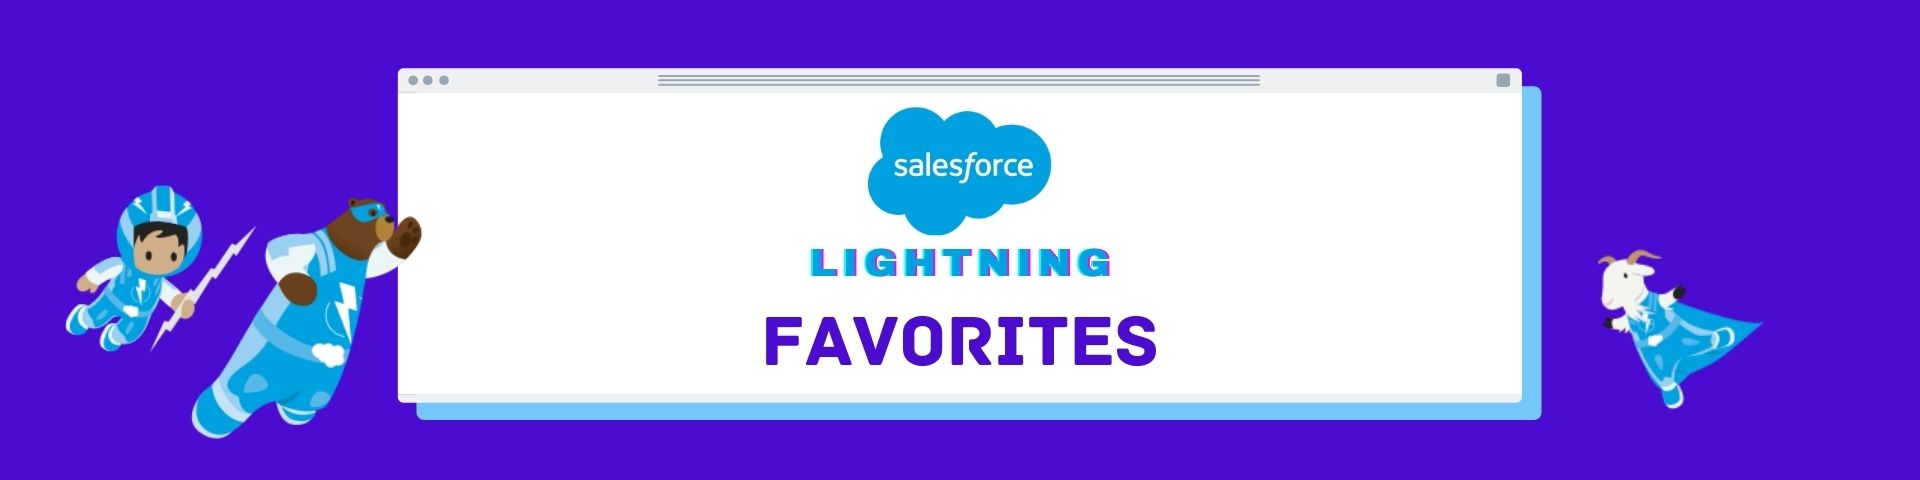 Salesforce Lightning Favorites